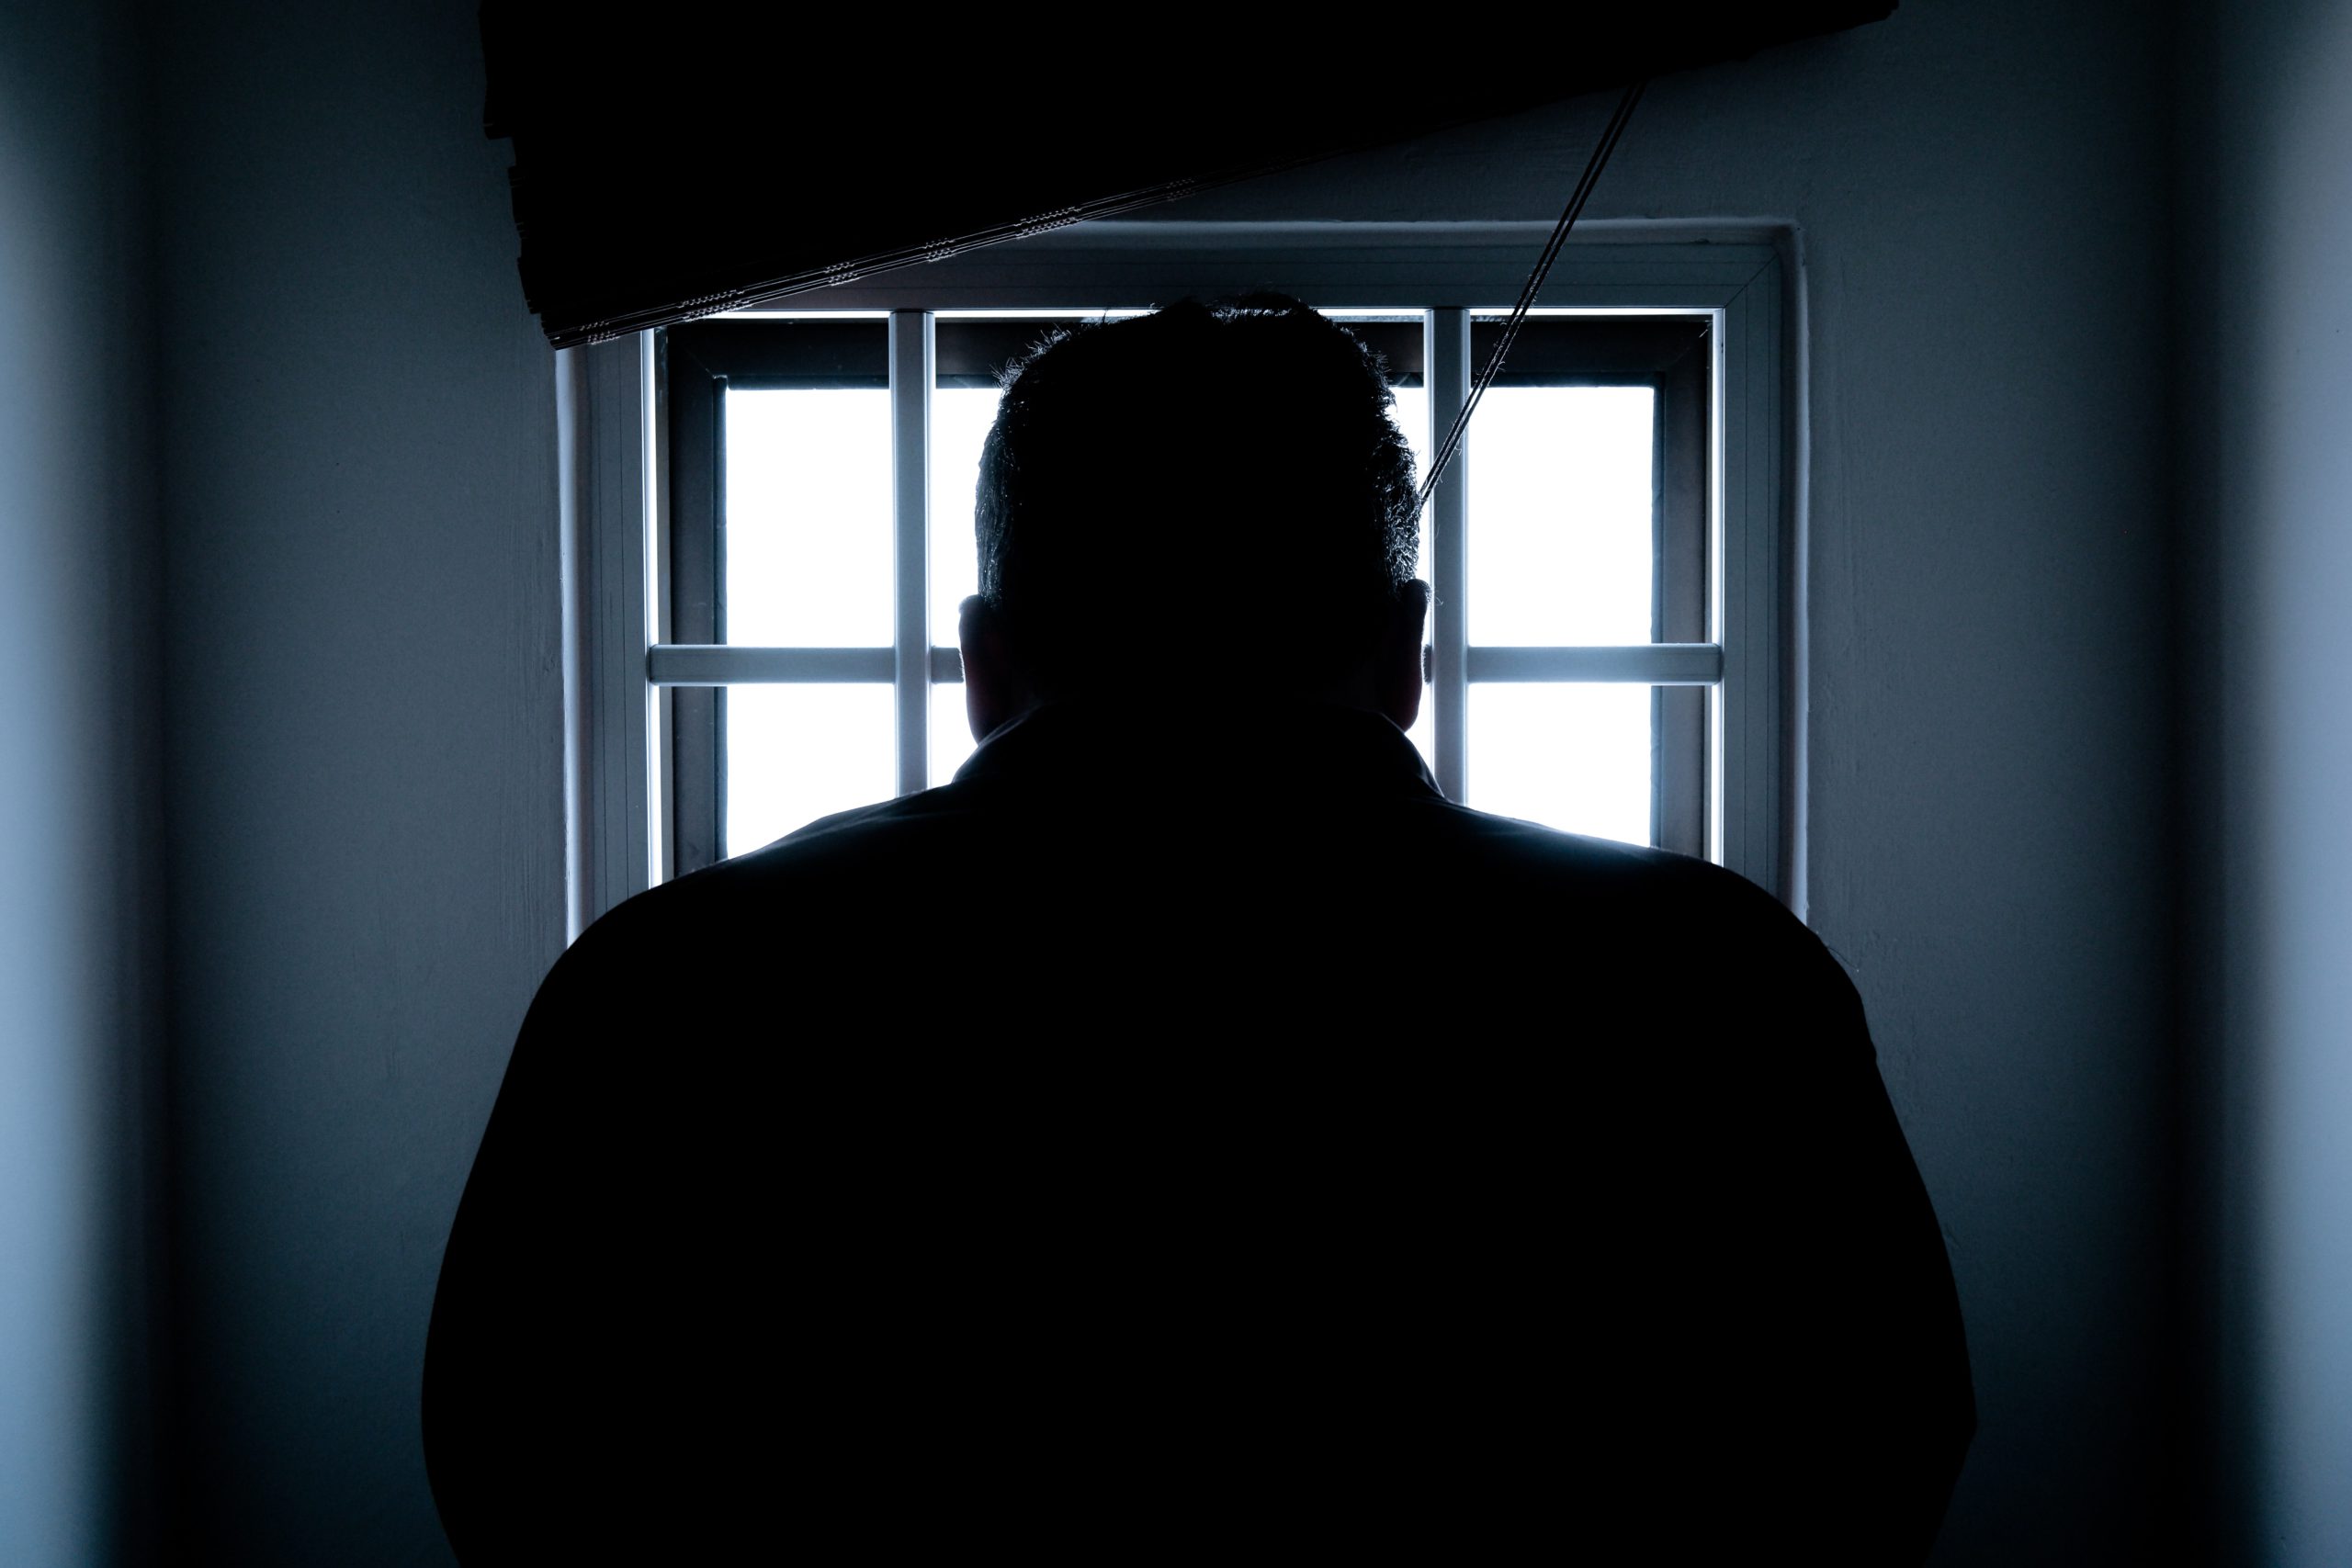 Una sentencia de prisión vitalicia es para proteger a la sociedad de delincuentes considerados altamente peligrosos | Foto: Pexels